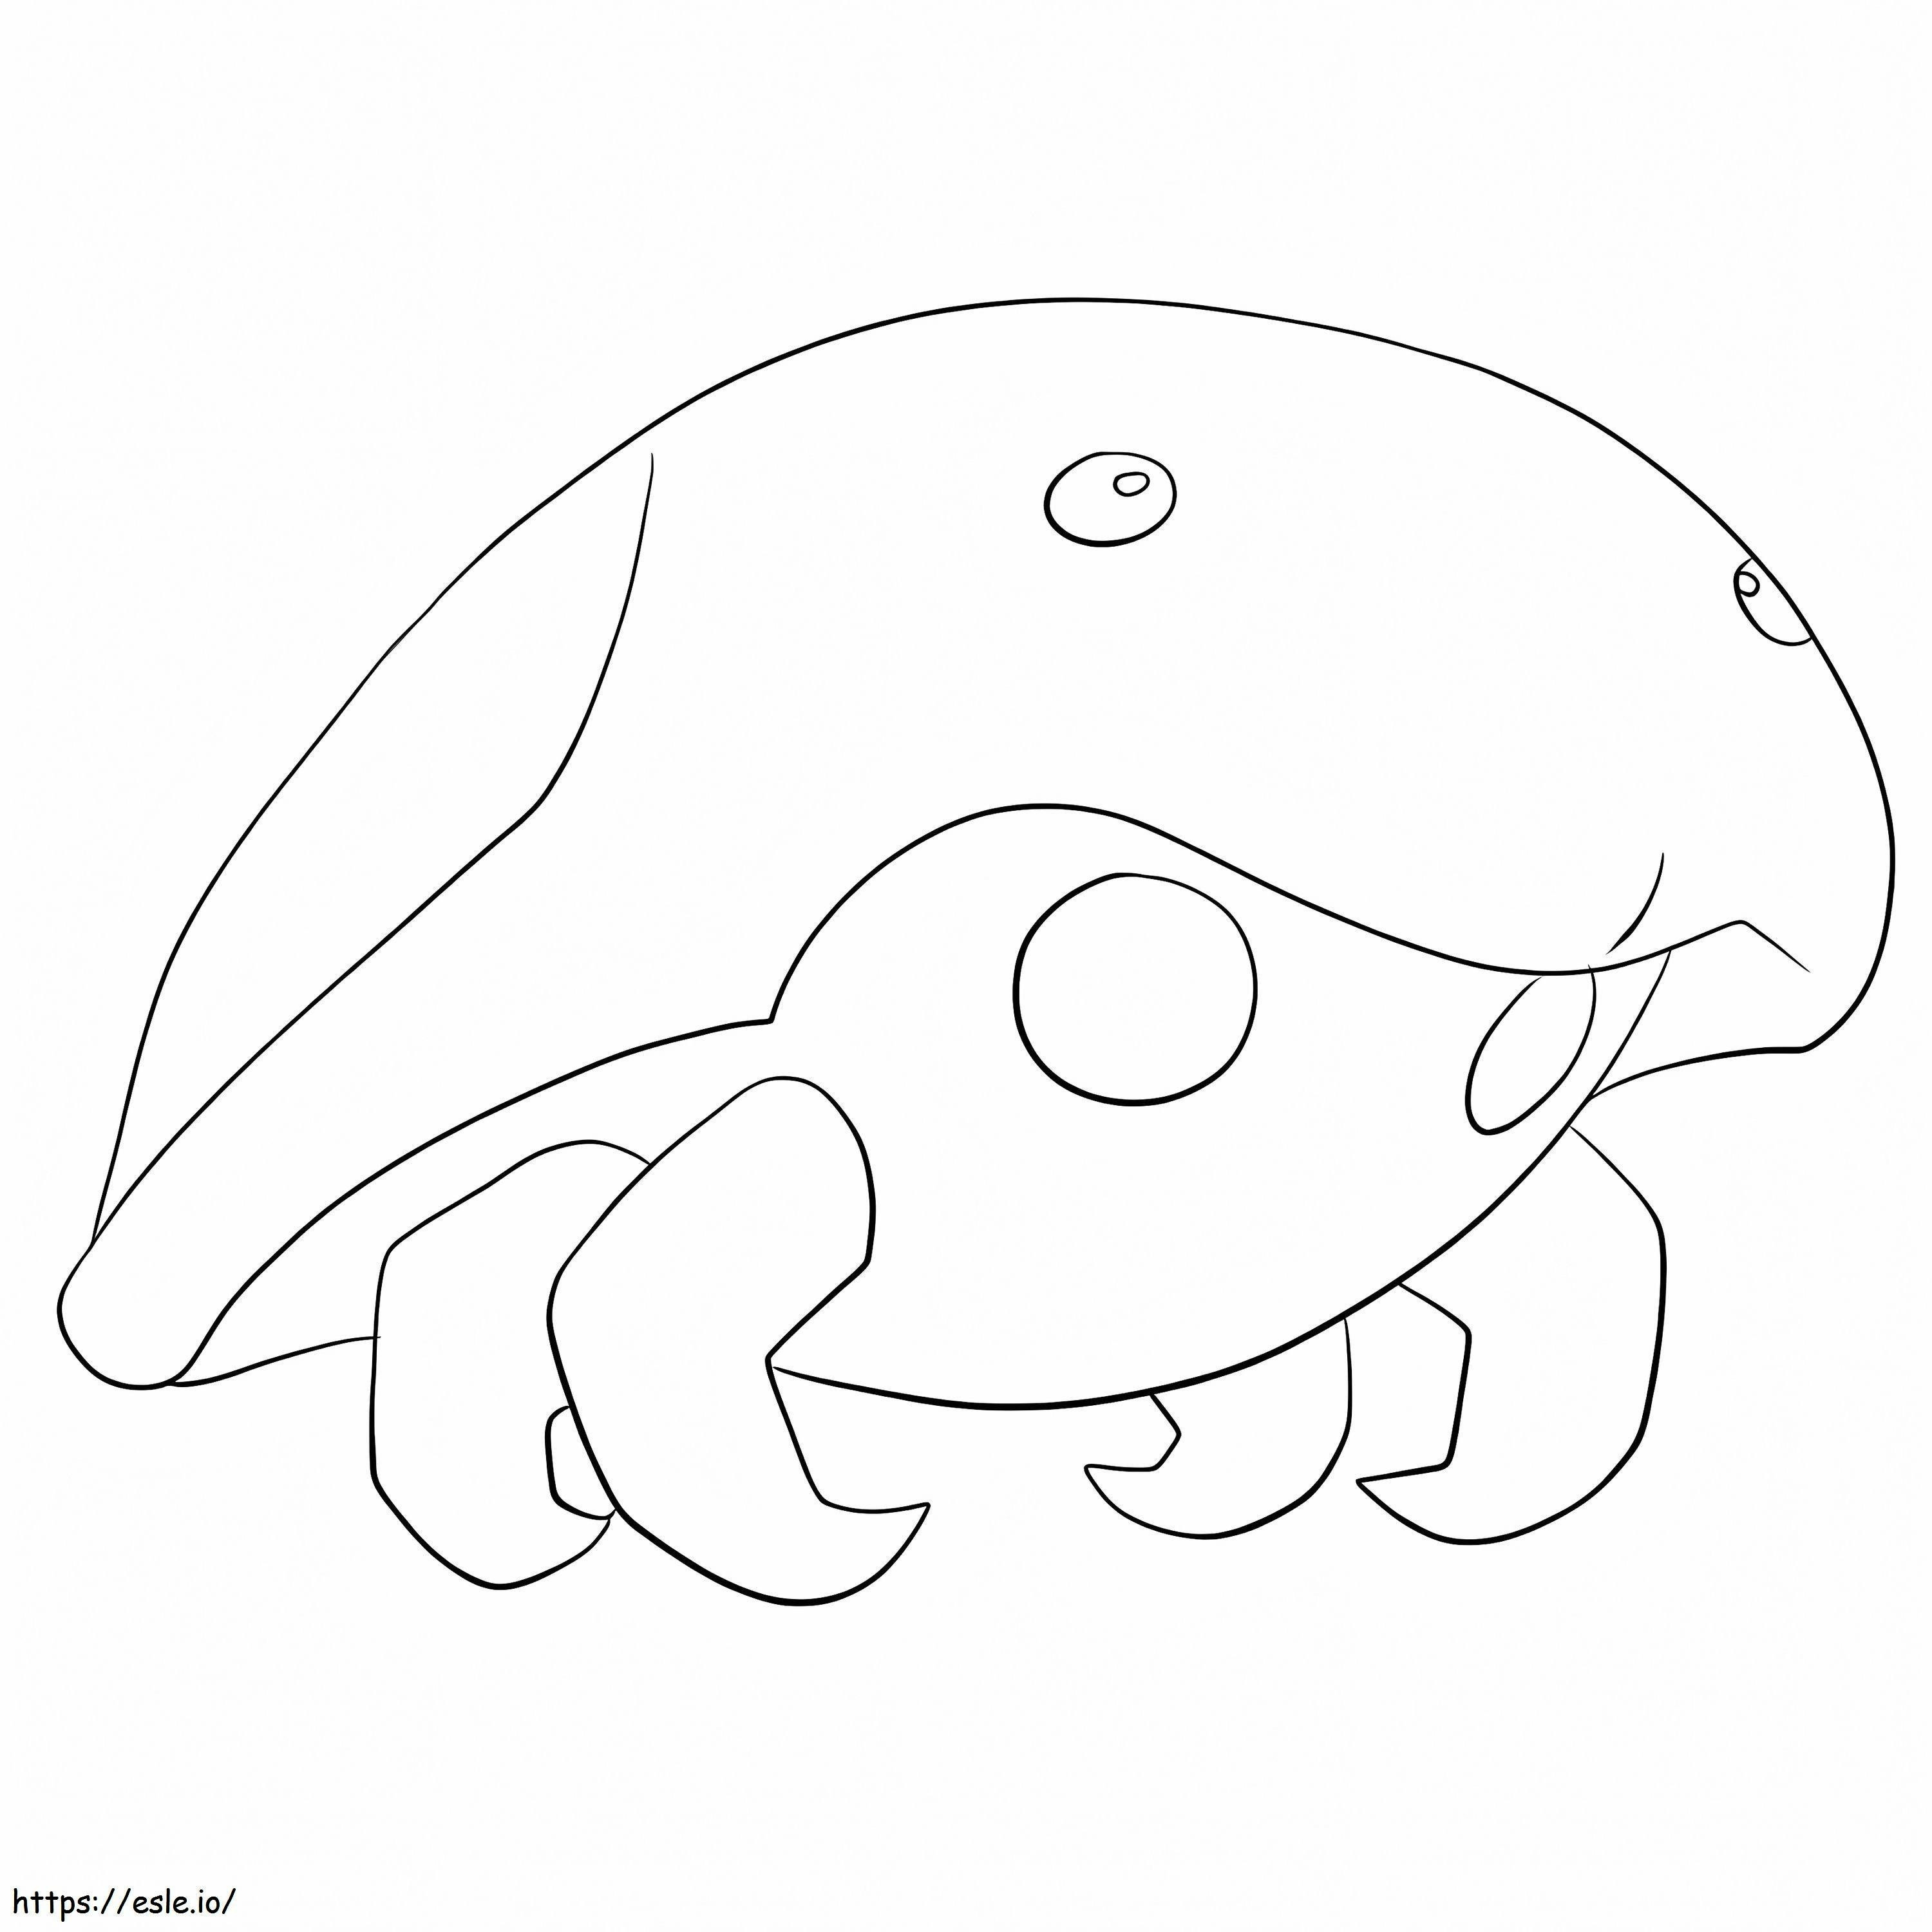 Coloriage Kabuto et Pokémon à imprimer dessin